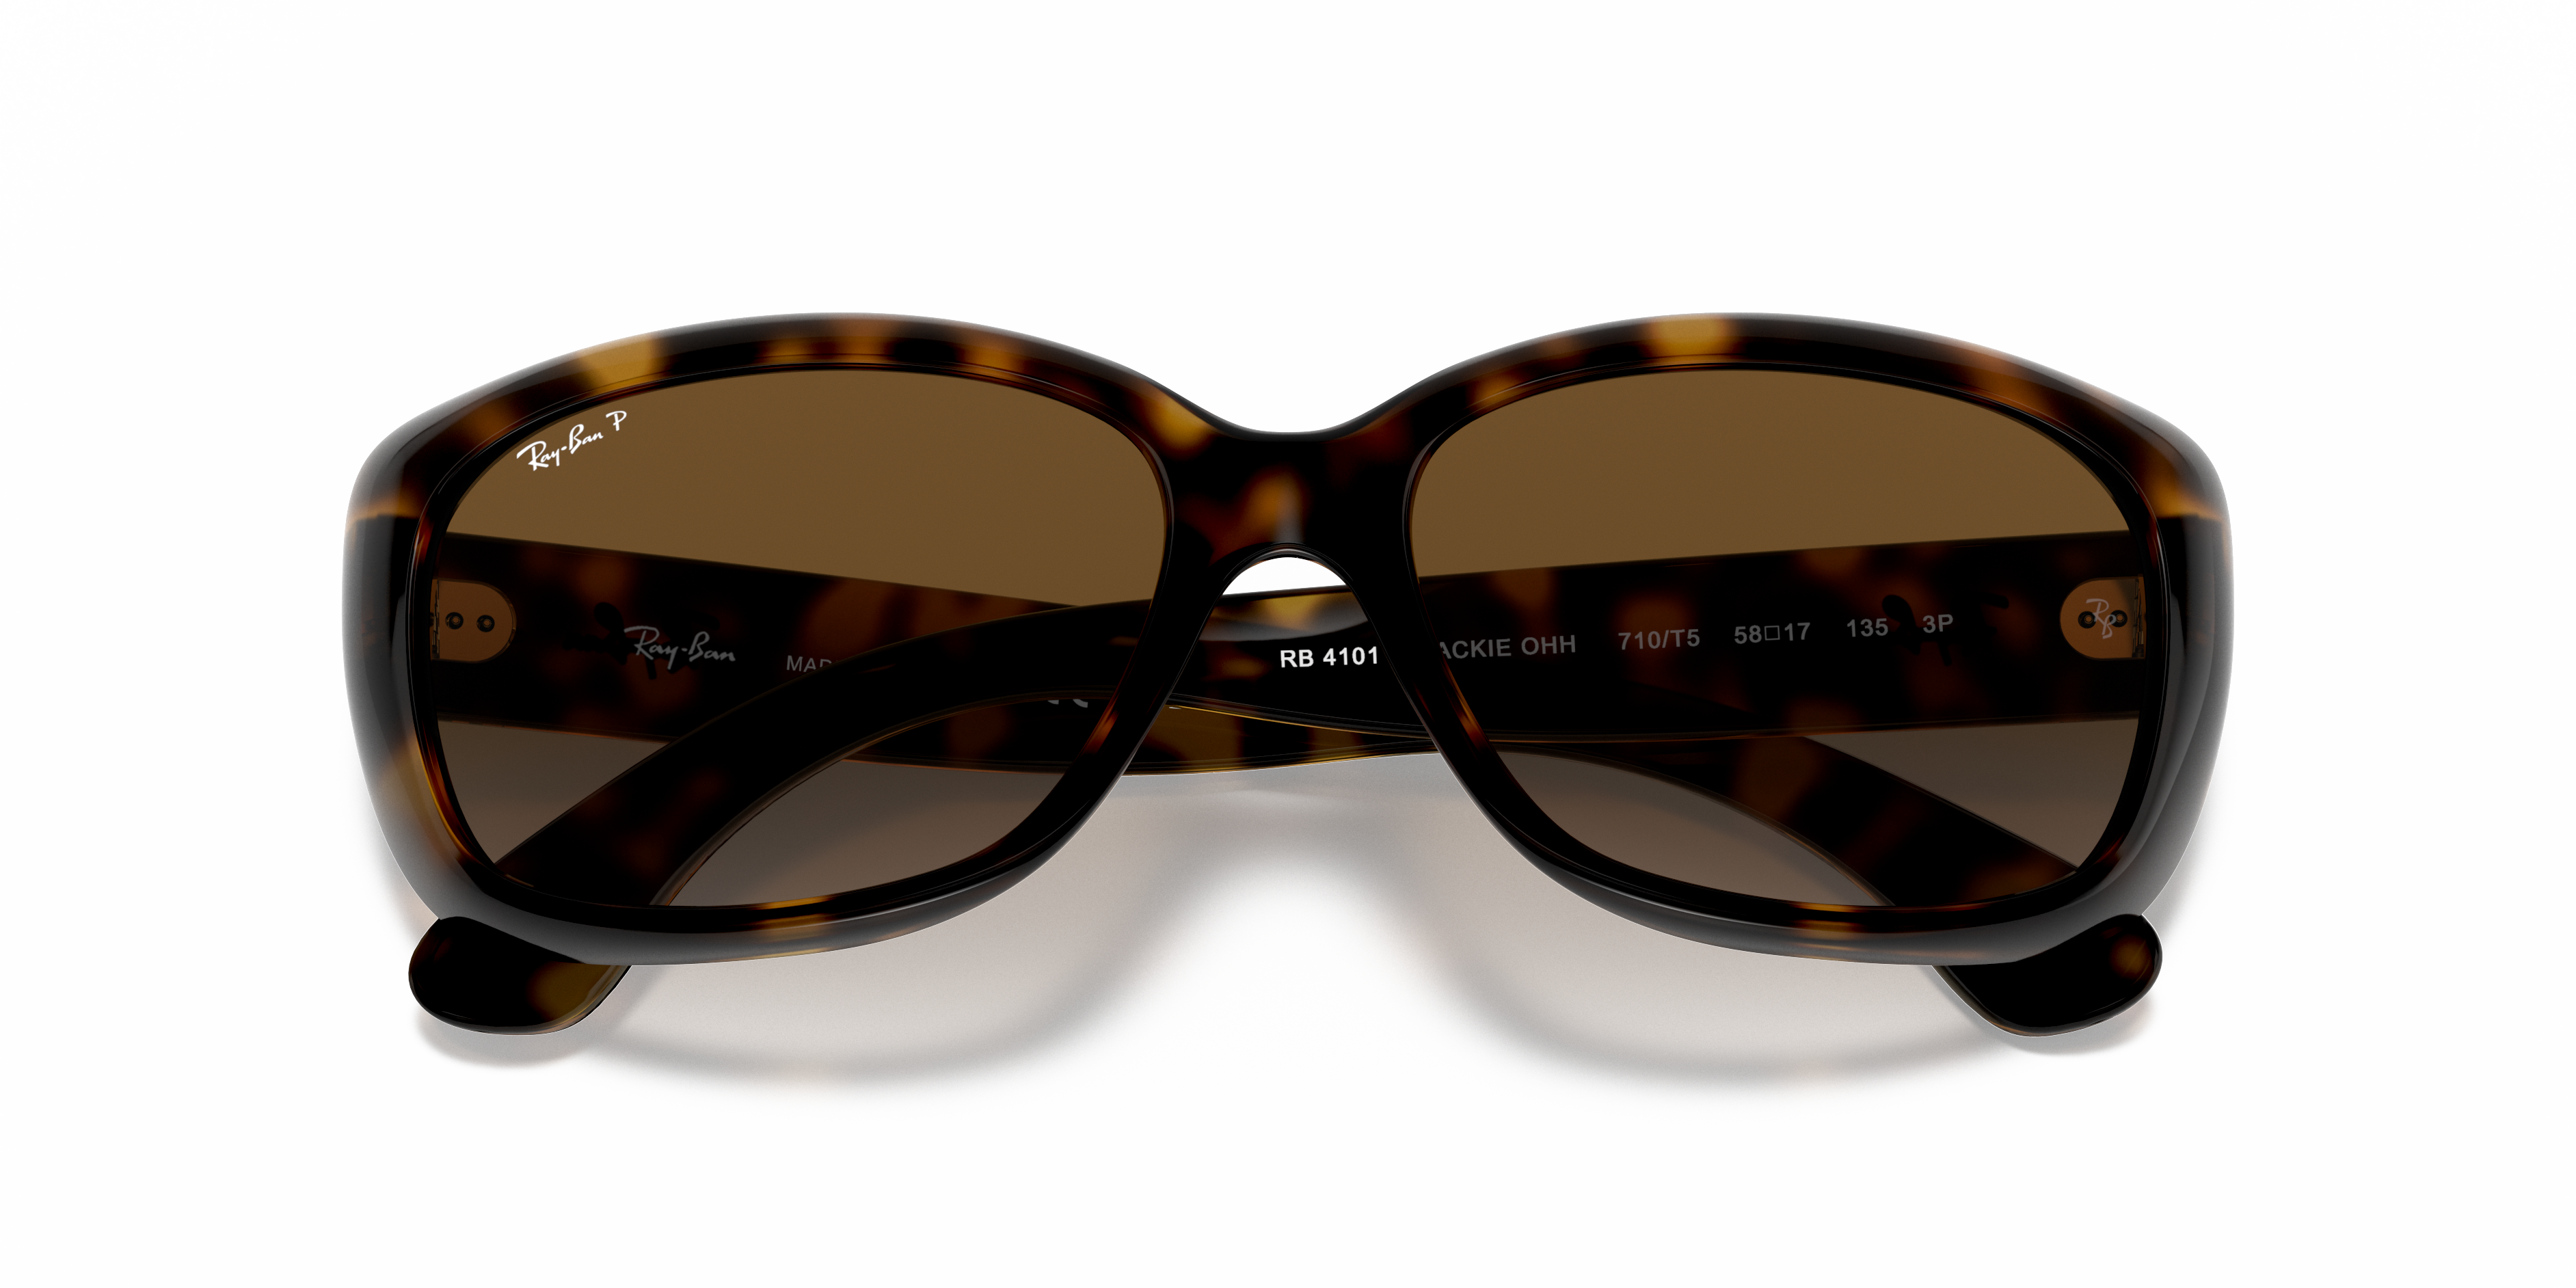 Accessoires Zonnebrillen & Eyewear Brillen Ray-Ban Zonnebril Frame Alleen RB 4101 Jackie oh 710 Dark Tortoise Italië 58 mm 